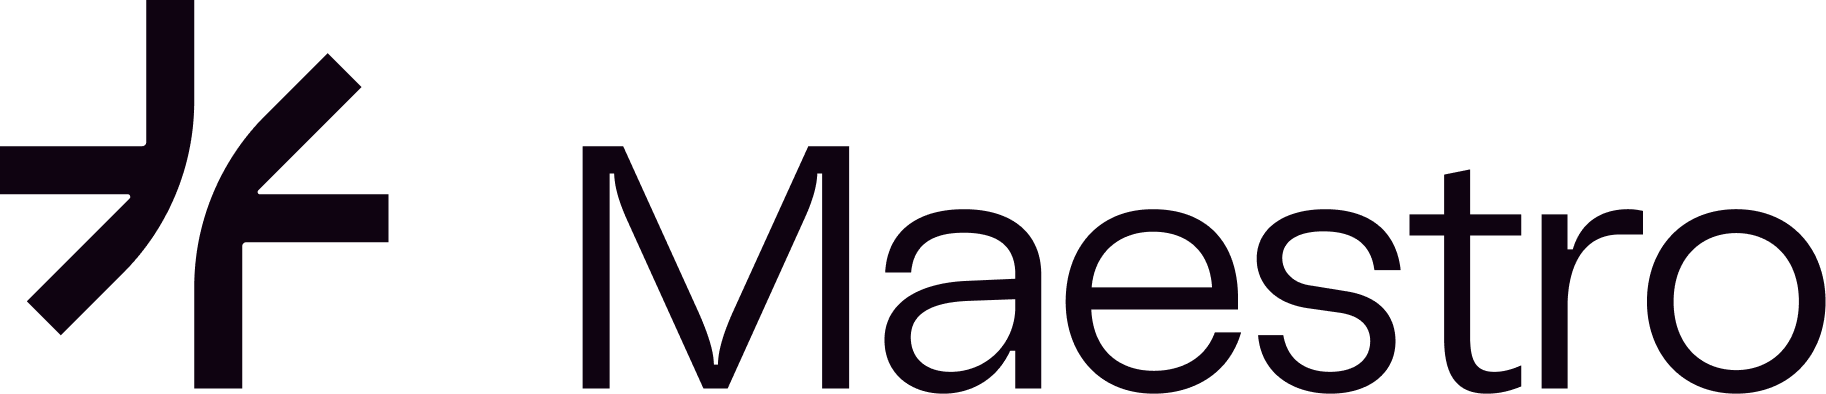 Maestro-logo